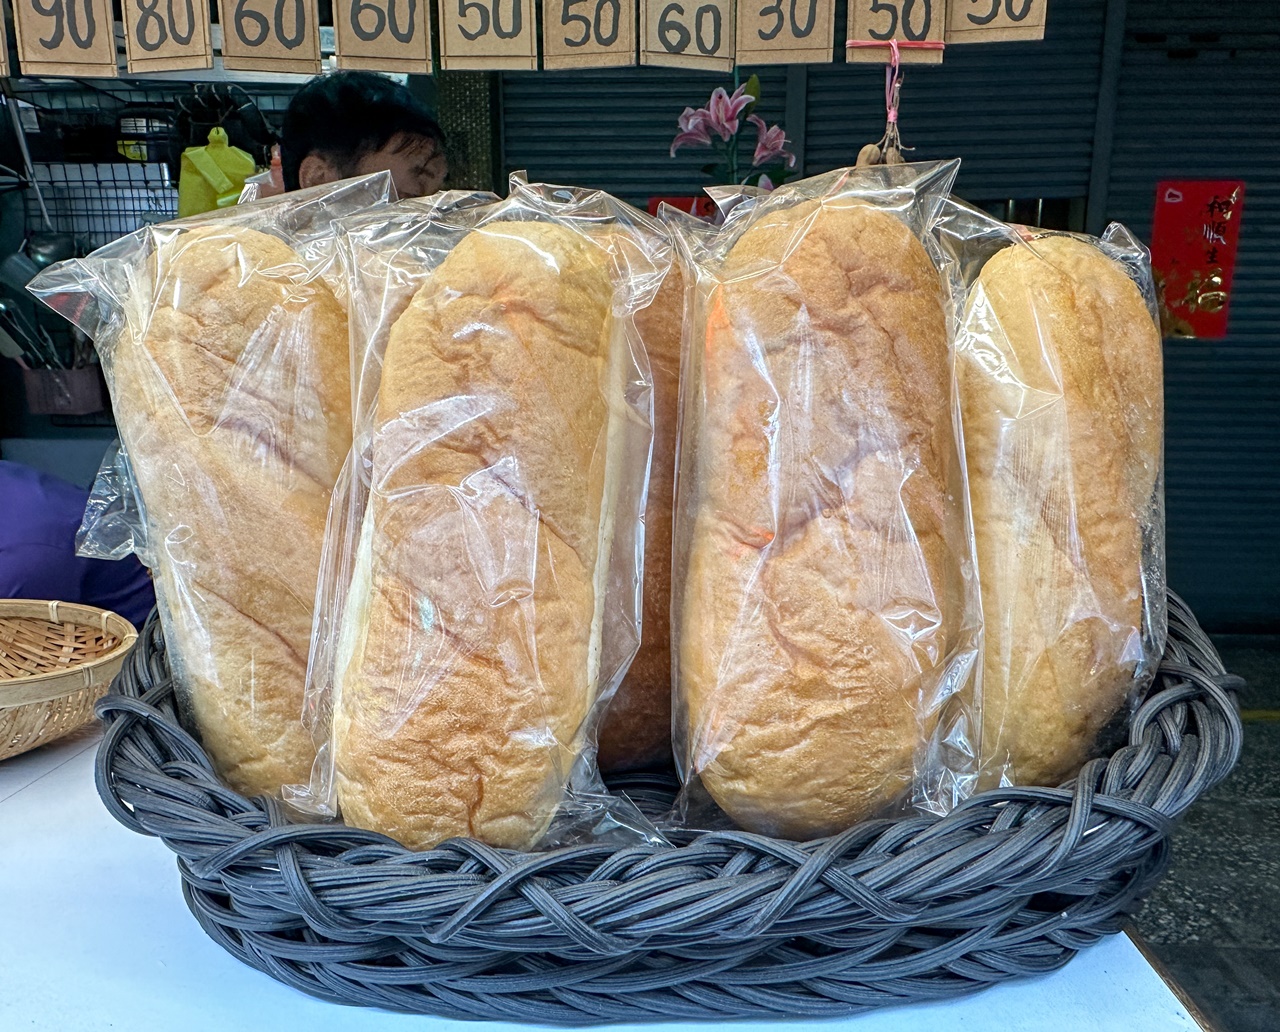 越式法國麵包&越南美食~台北中山區越式素食